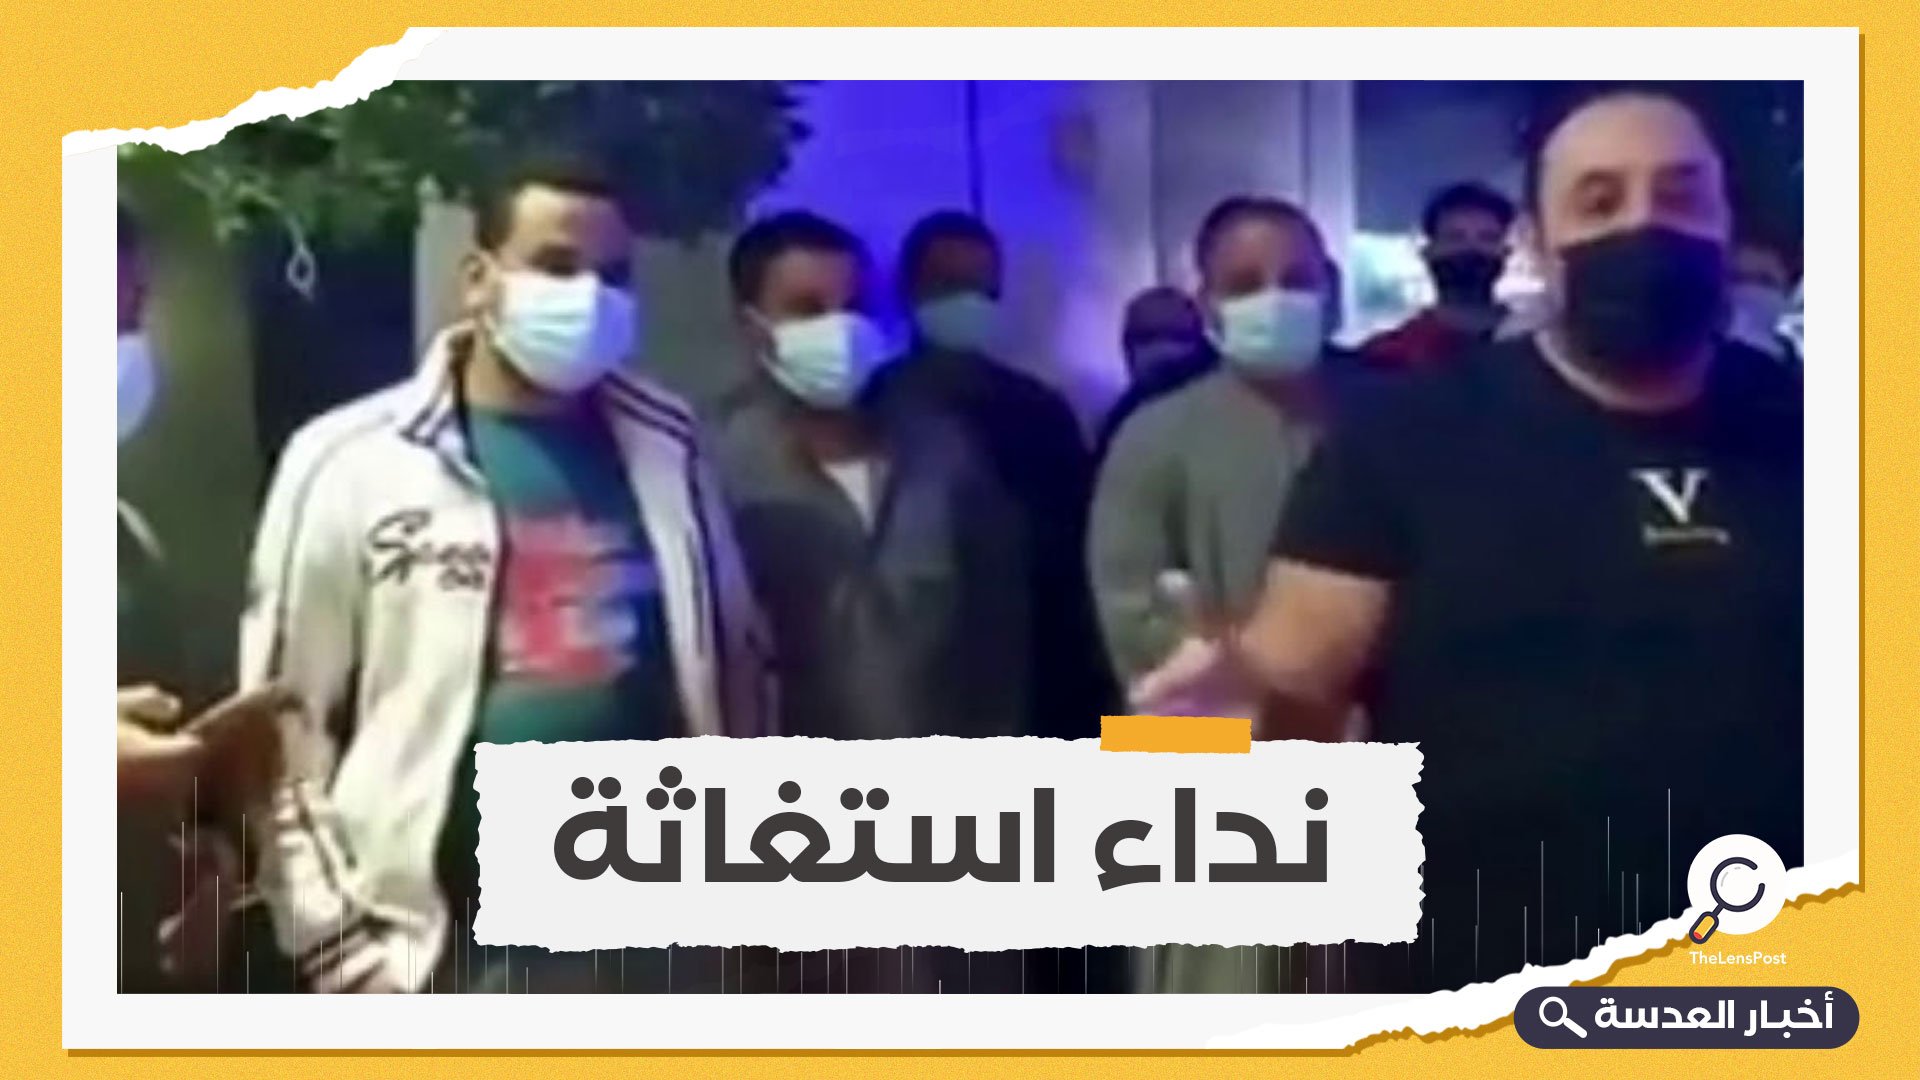 استغاثة مصرية من داخل الحجر الصحي في الإمارات.. ما القصة؟